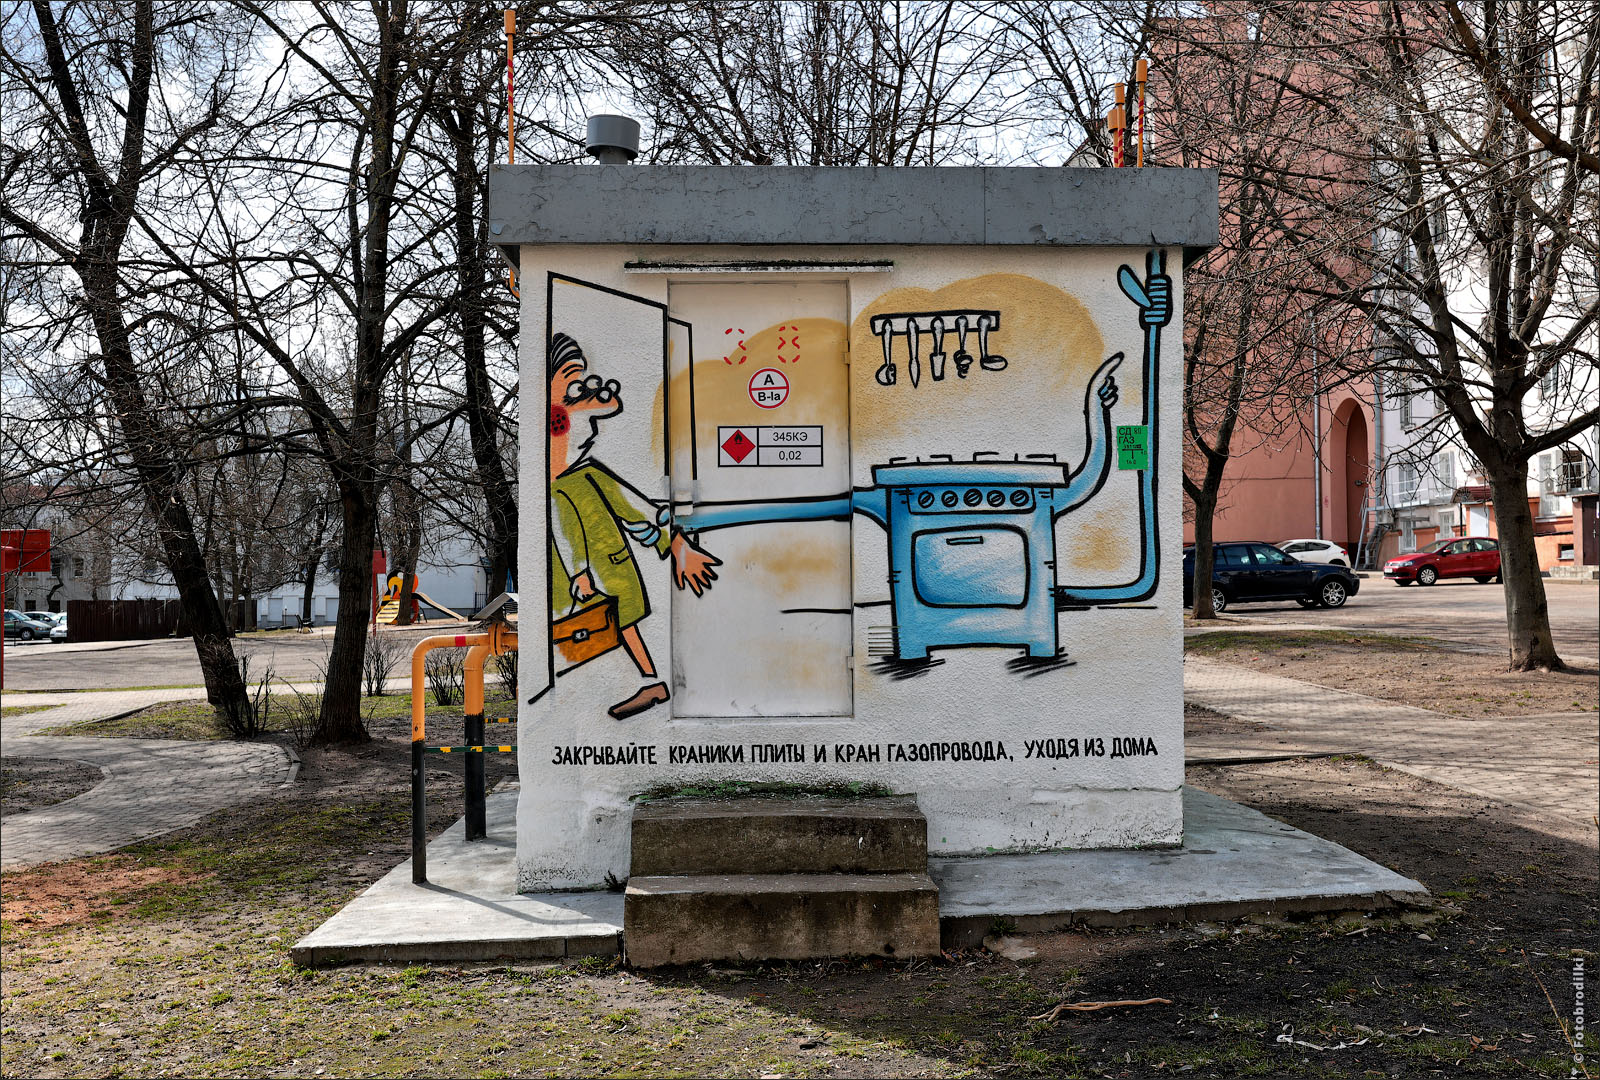 Граффити на газораспределительной станции, Минск, Беларусь